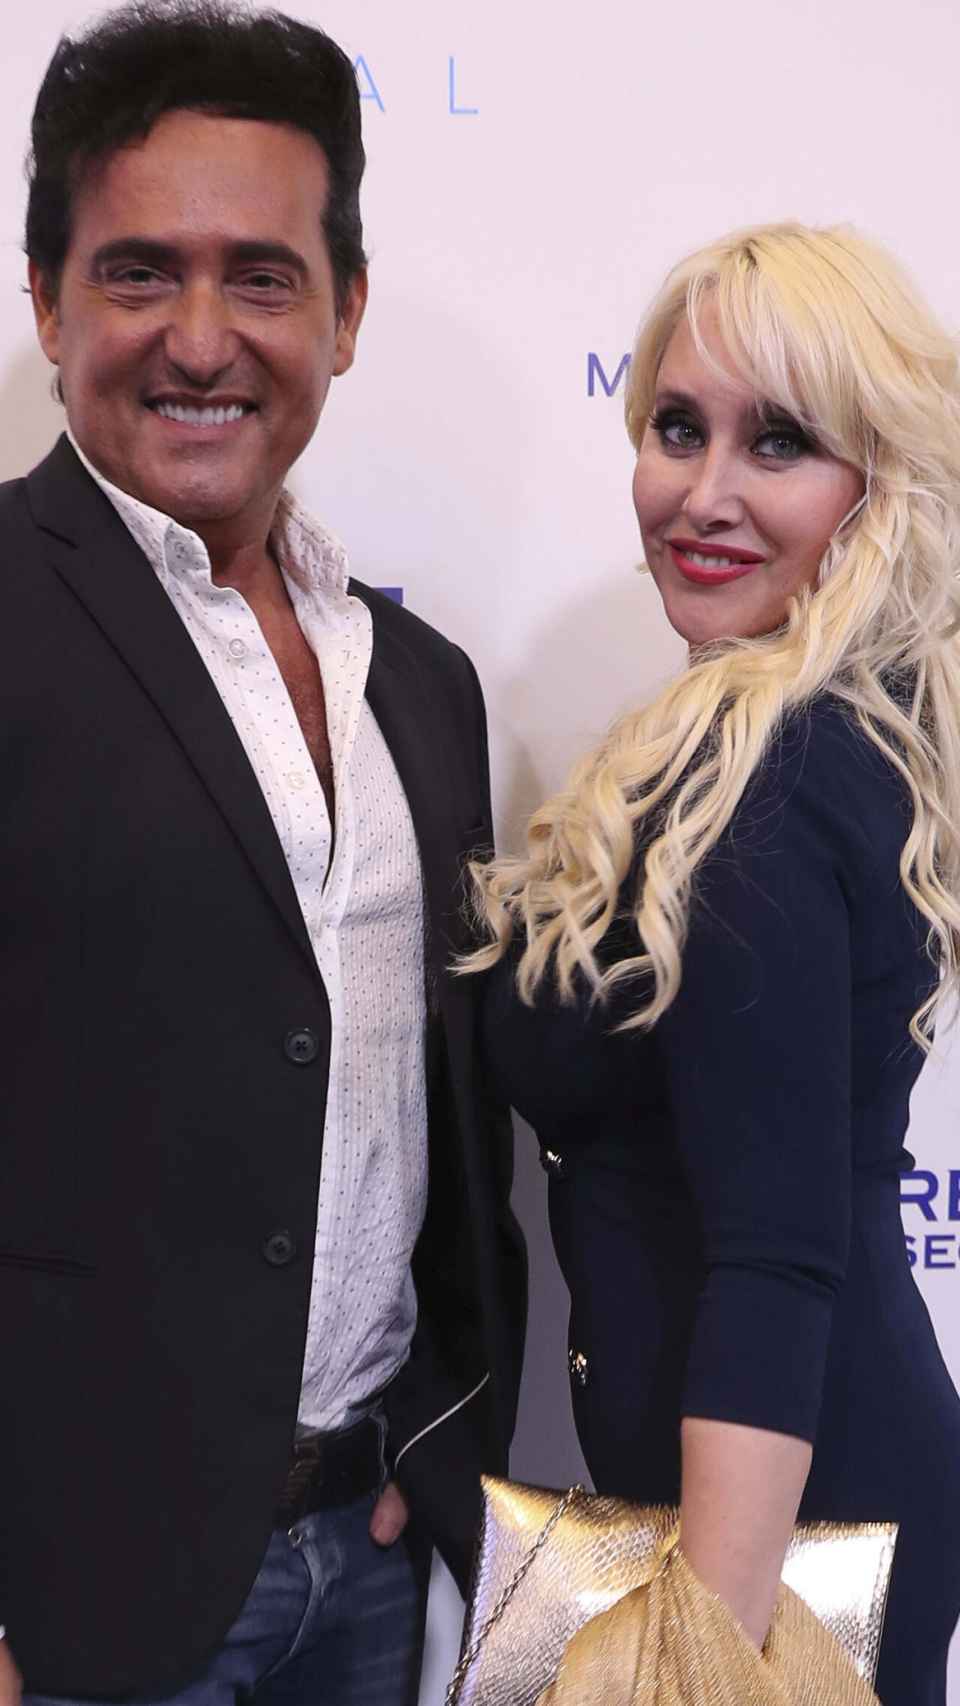 Carlos Marín y Geraldine Larrosa en un evento público en octubre de 2019.